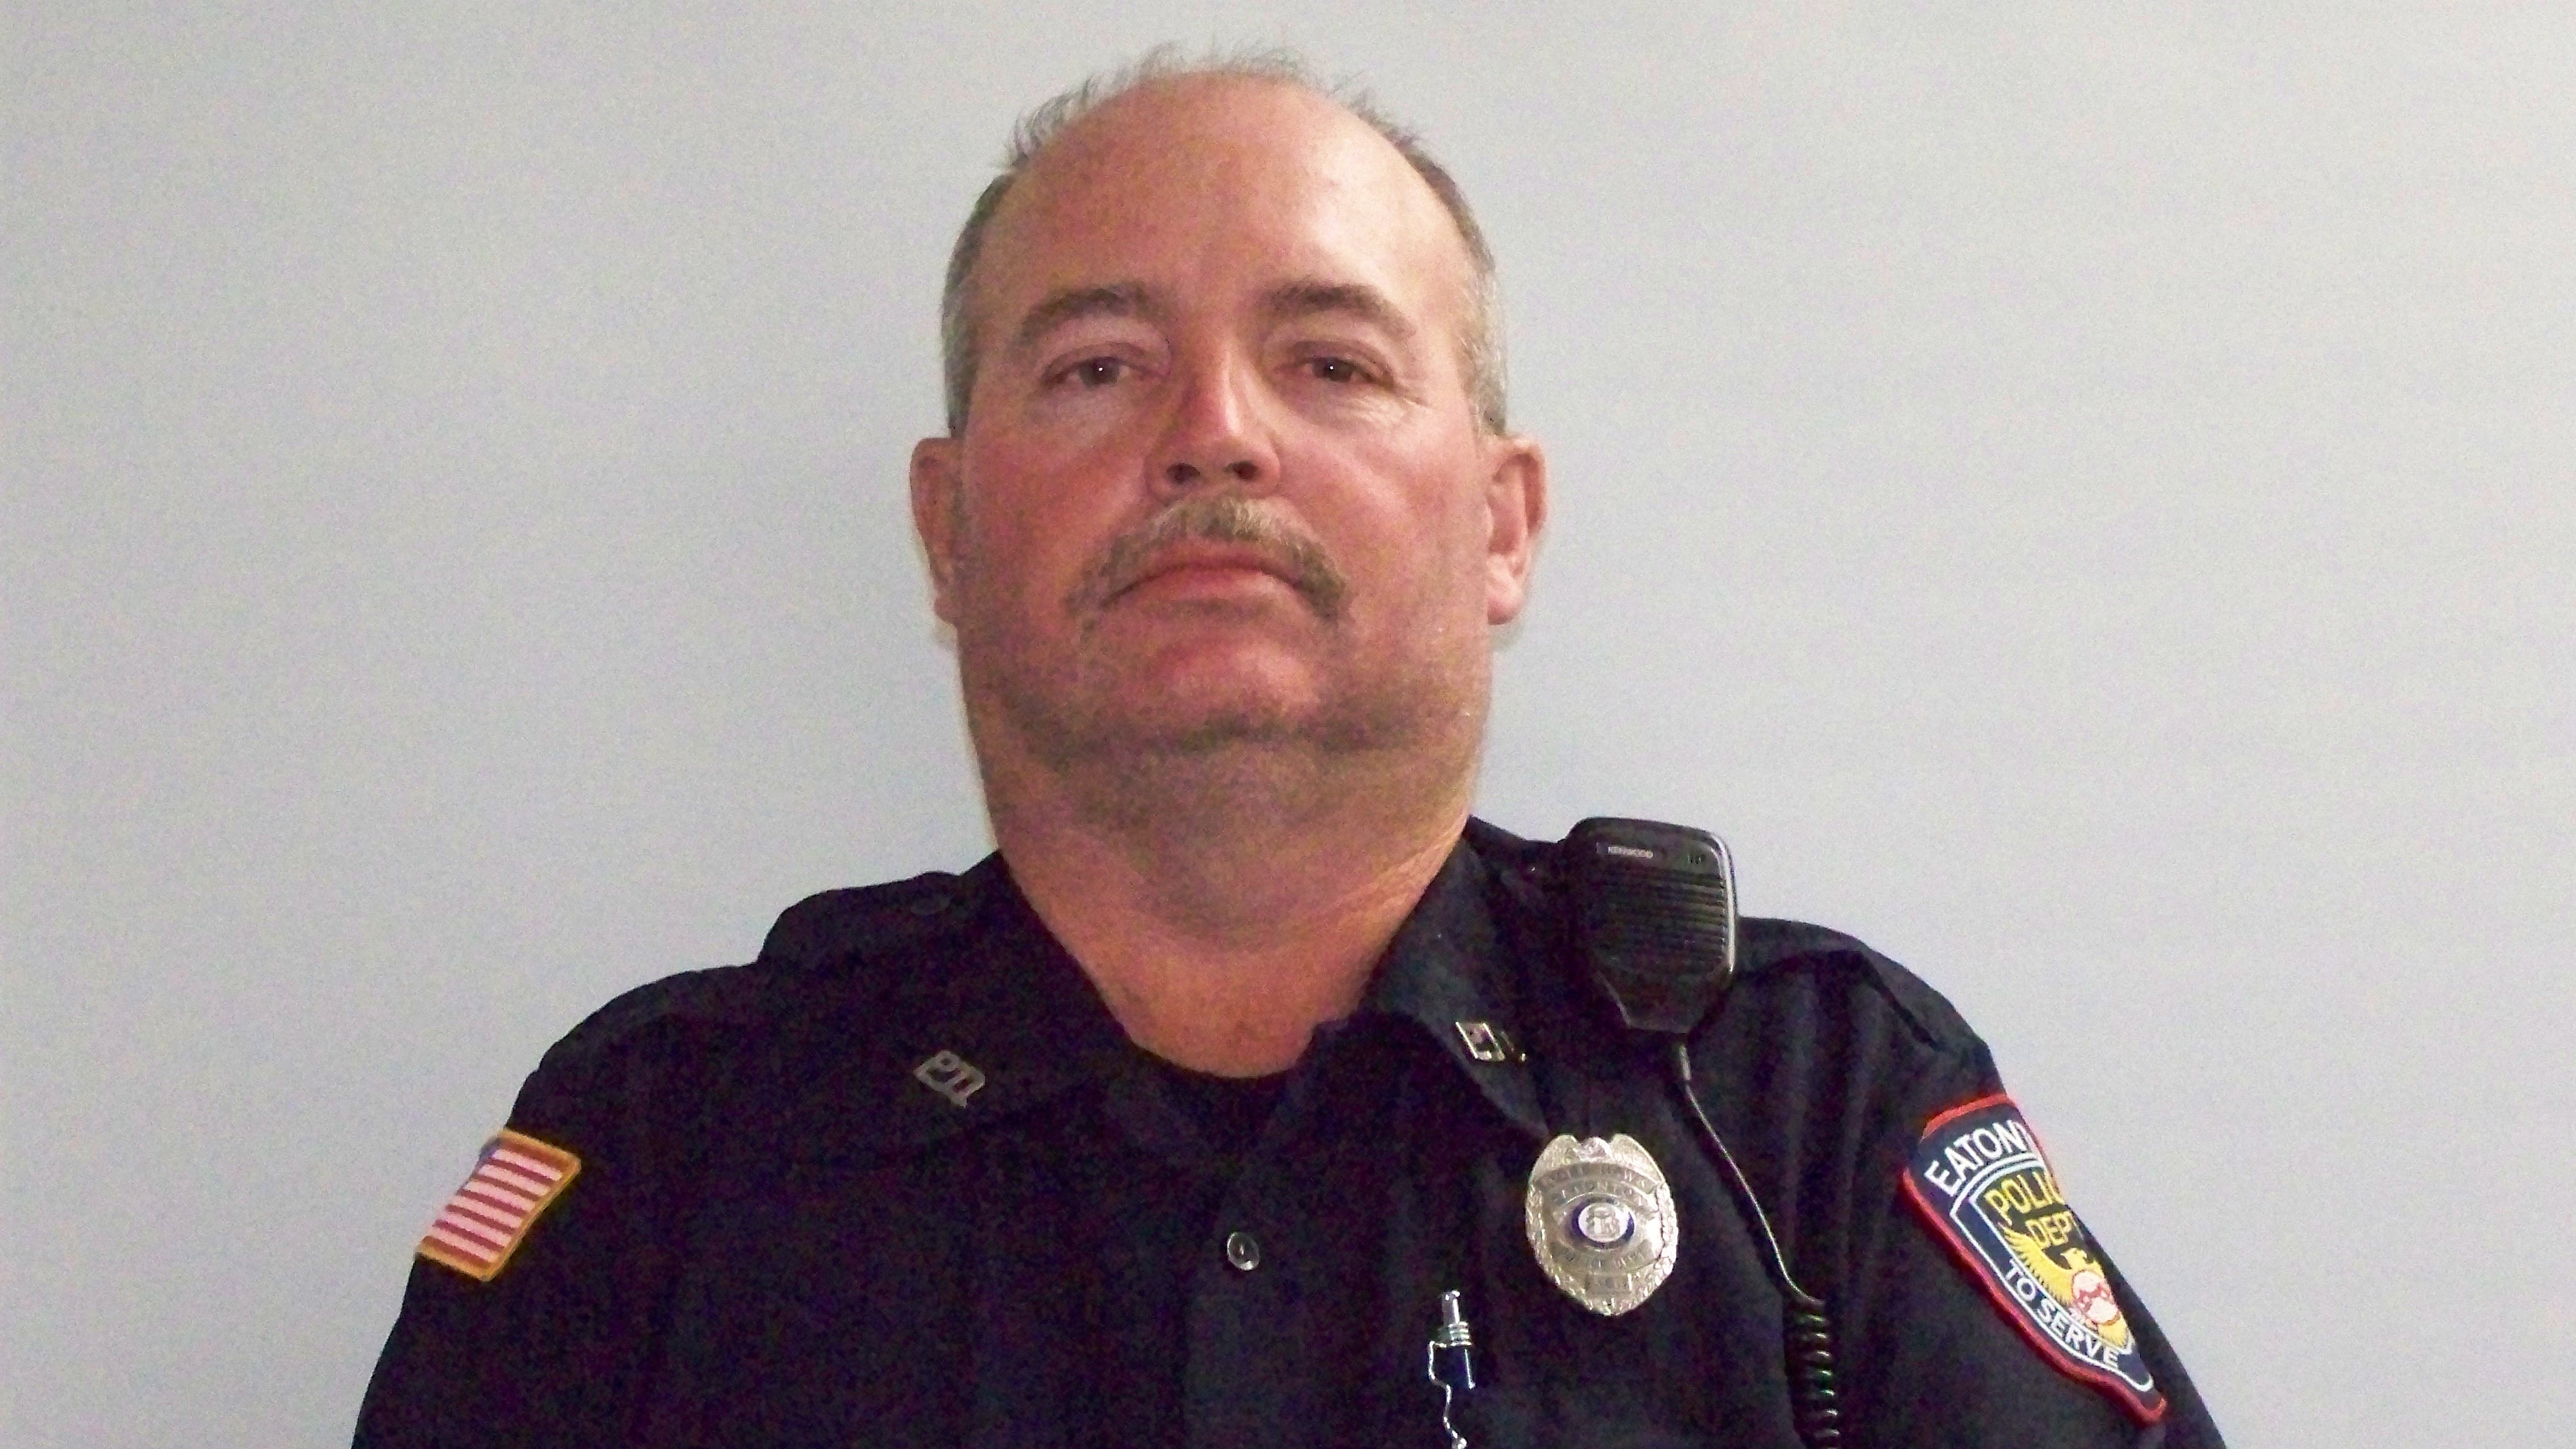 Police Officer Noel Lee Hawk | Eatonton Police Department, Georgia